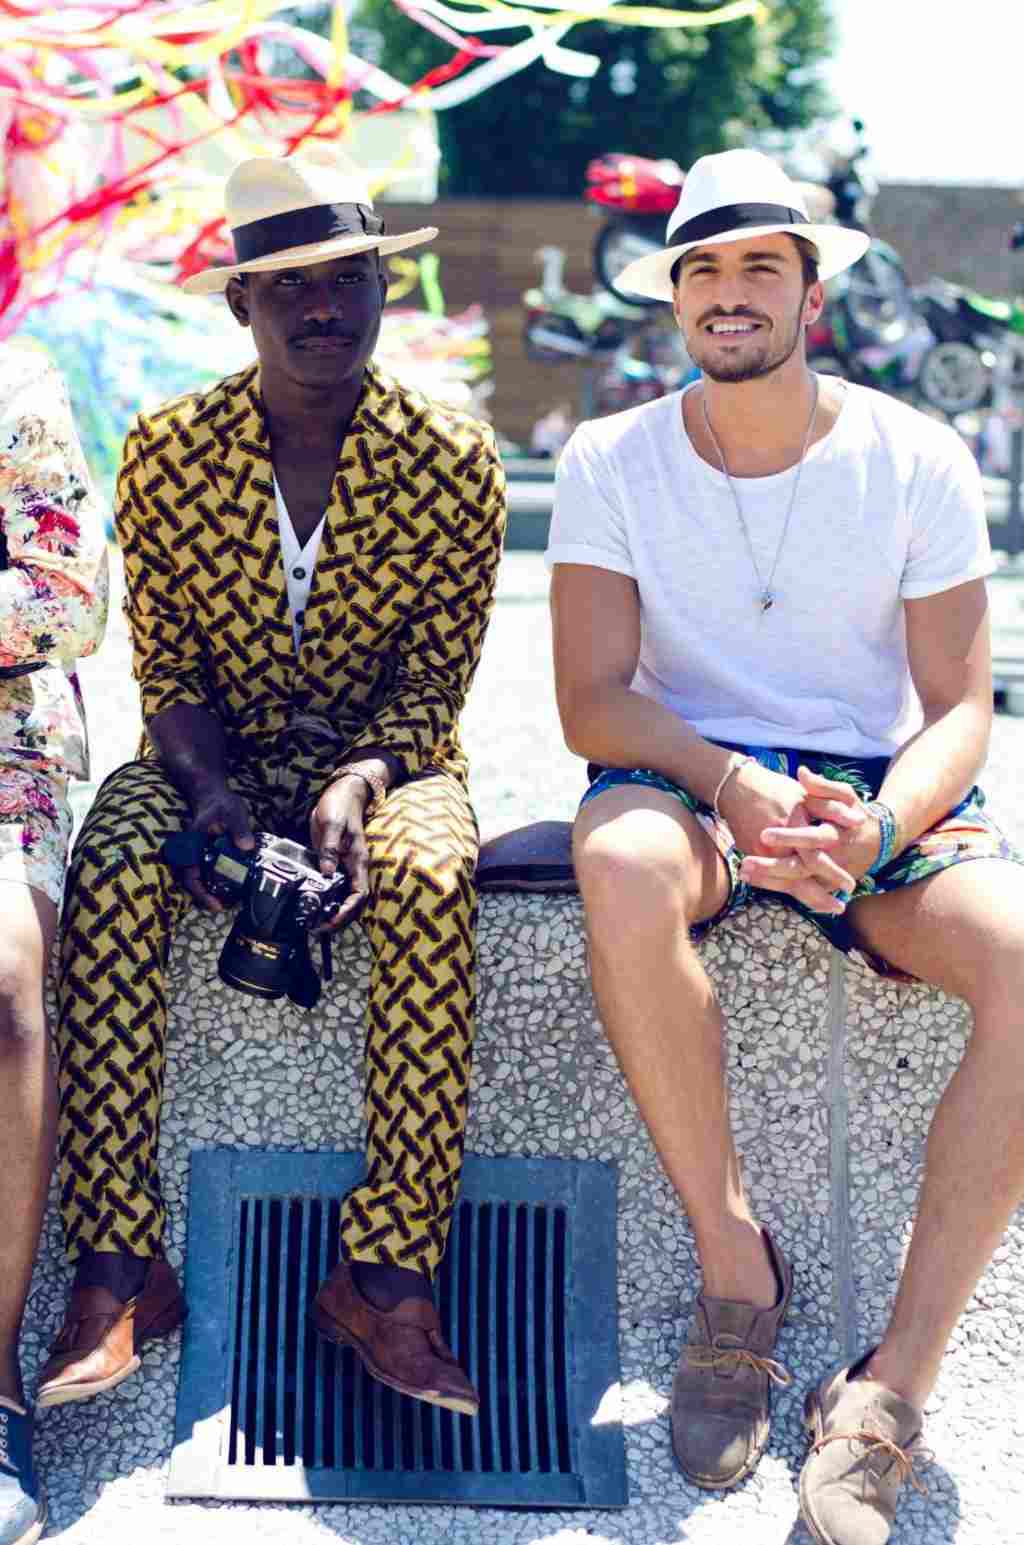 färgglada sommarfärger är modetrenden med vardagskläder och hattar för män som fedora och panamahattar